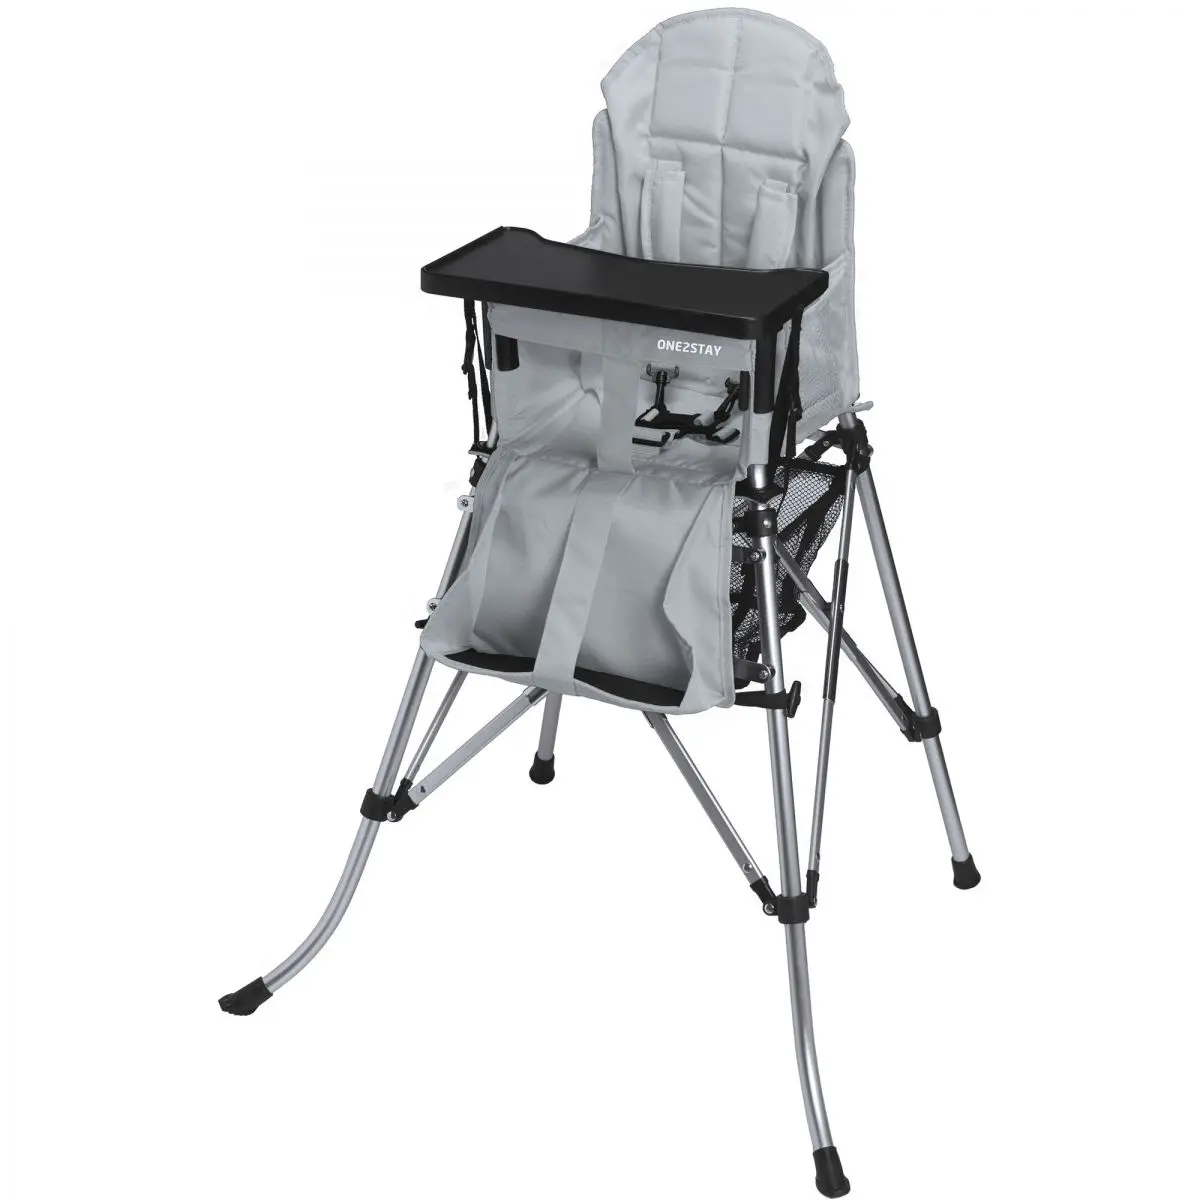 Detská vysoká stolička Femstar One2Stay Comfort, strieborná